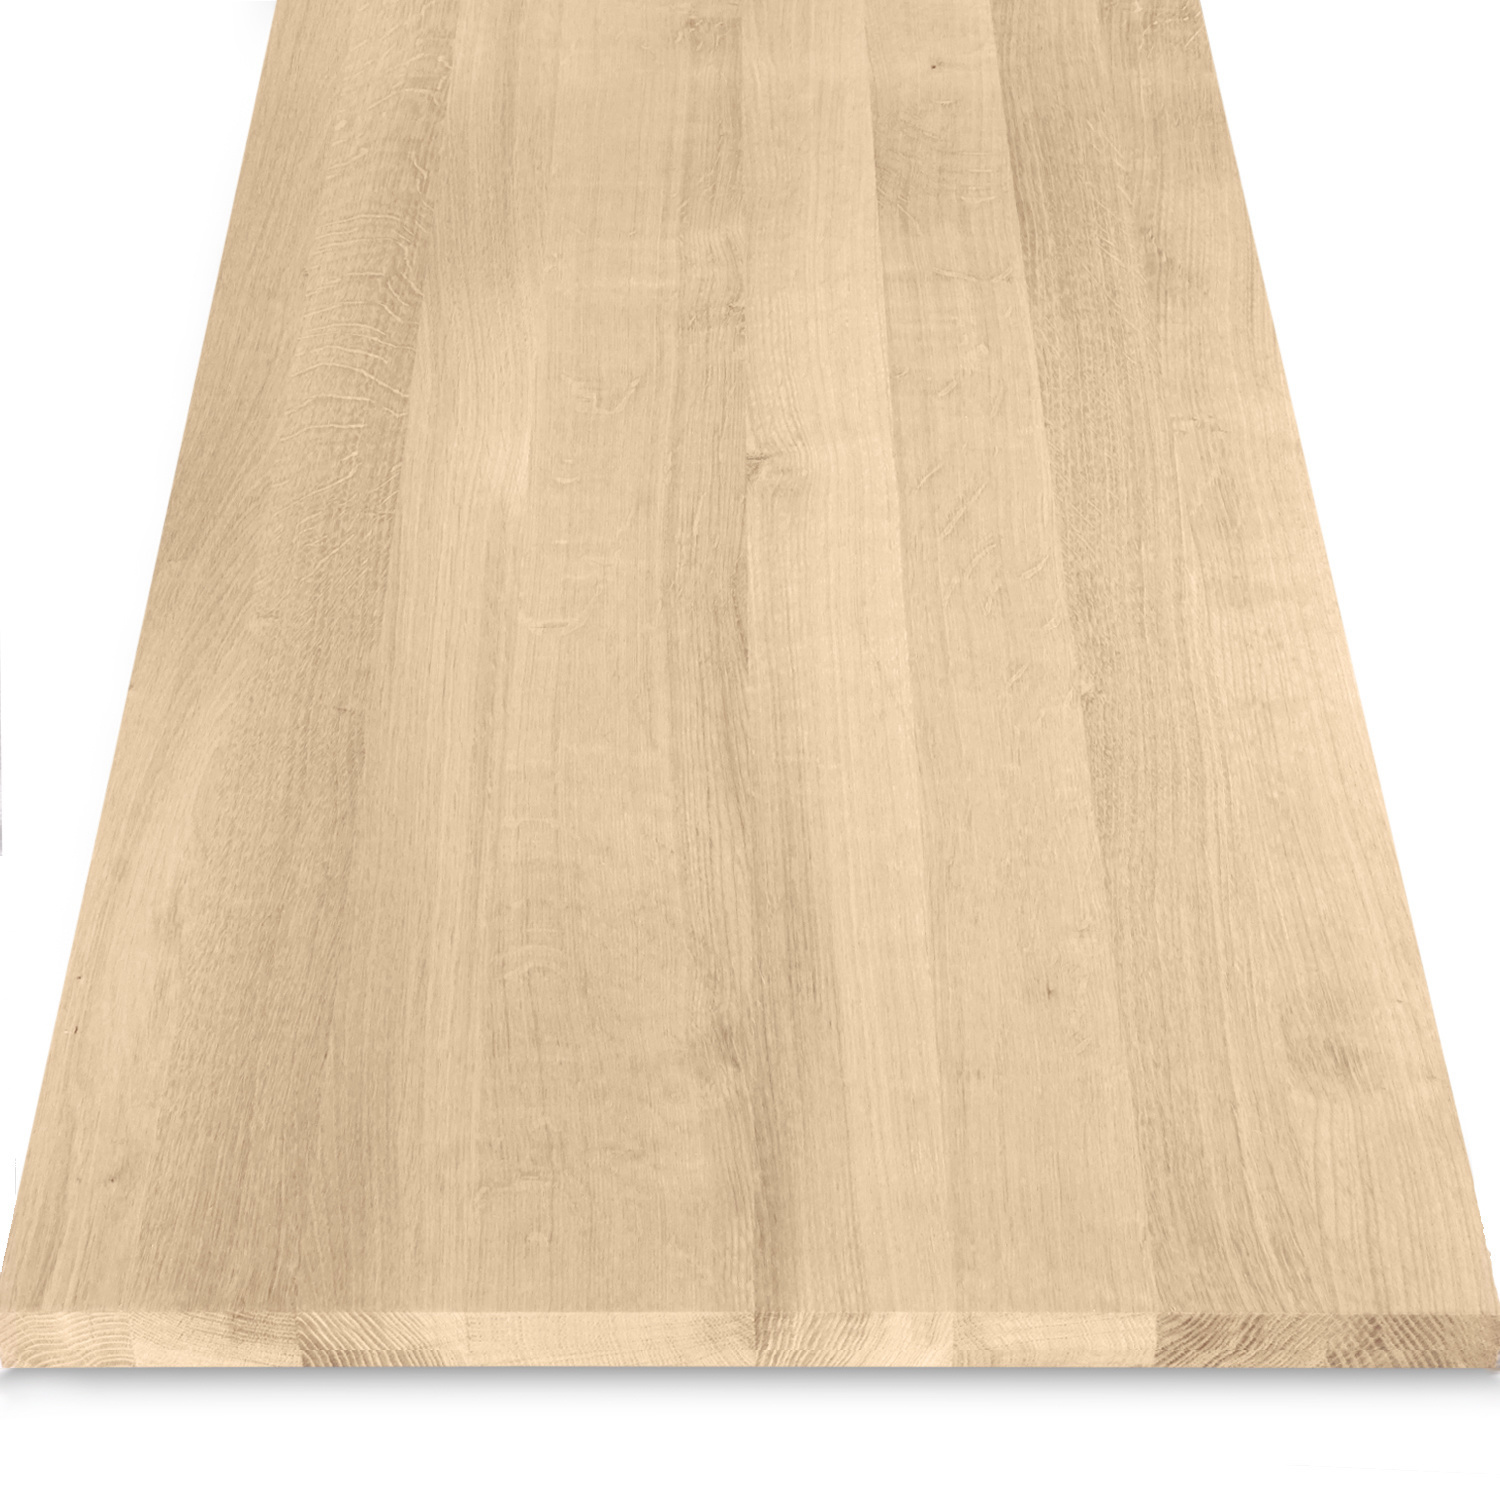  Leimholzplatte Eiche nach Maß - 2,3 cm dick - Eichenholz A-Qualität- Eiche Massivholzplatte - verleimt & künstlich getrocknet (HF 8-12%) - 15-120x20-260 cm